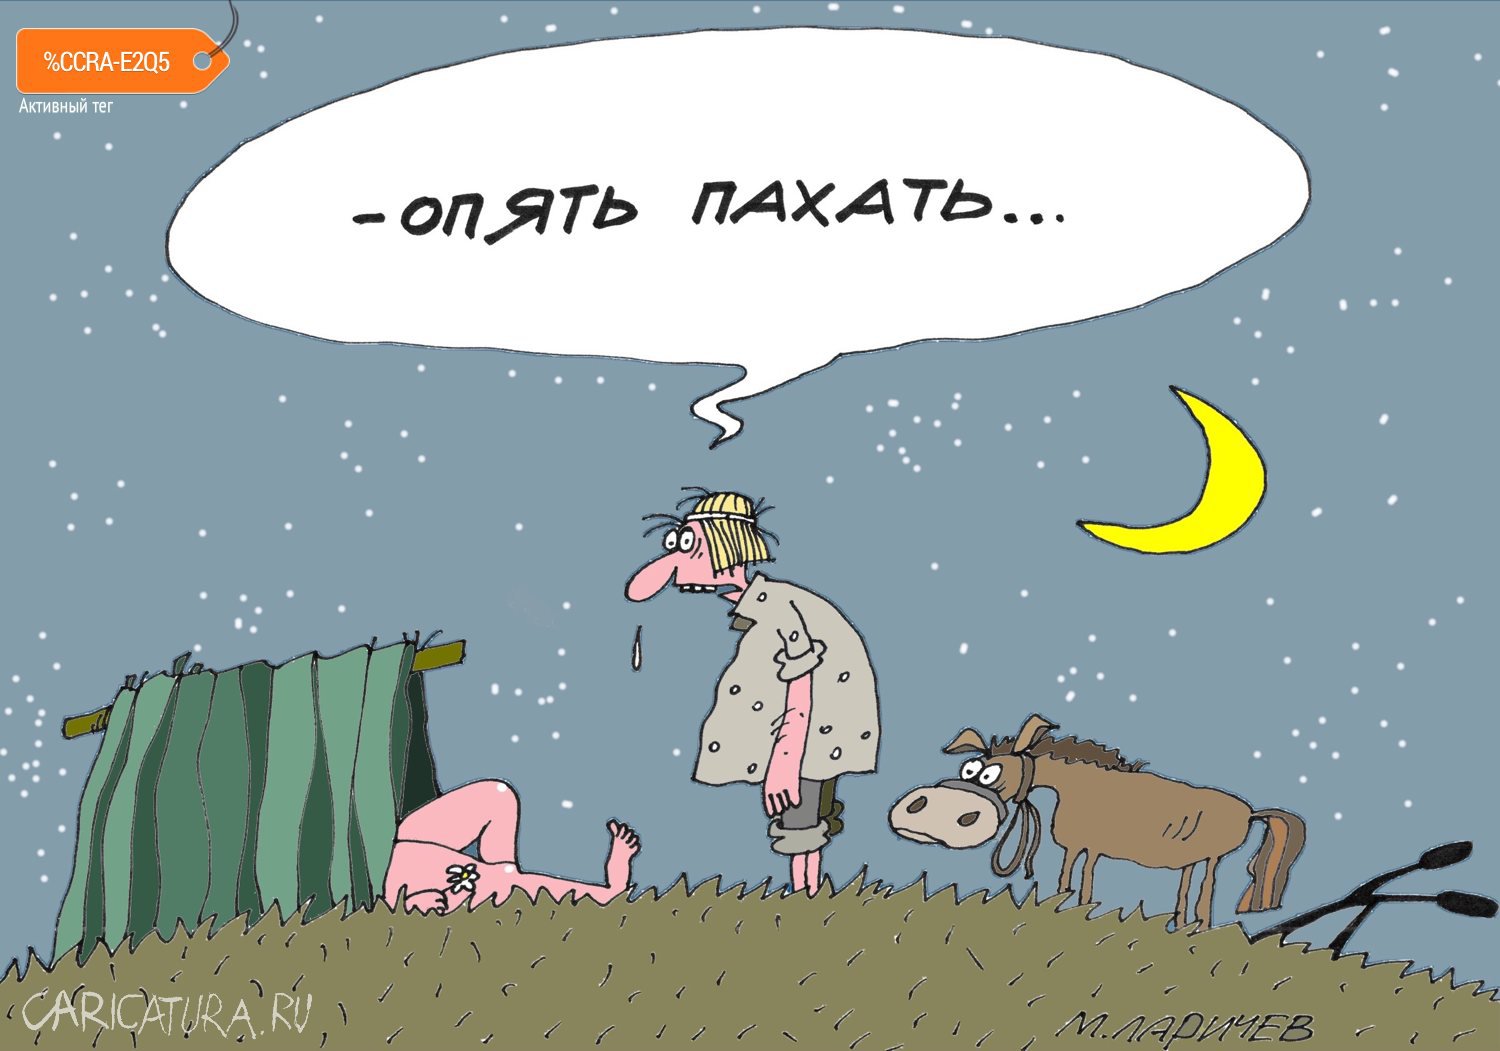 Карикатура "Пахота", Михаил Ларичев